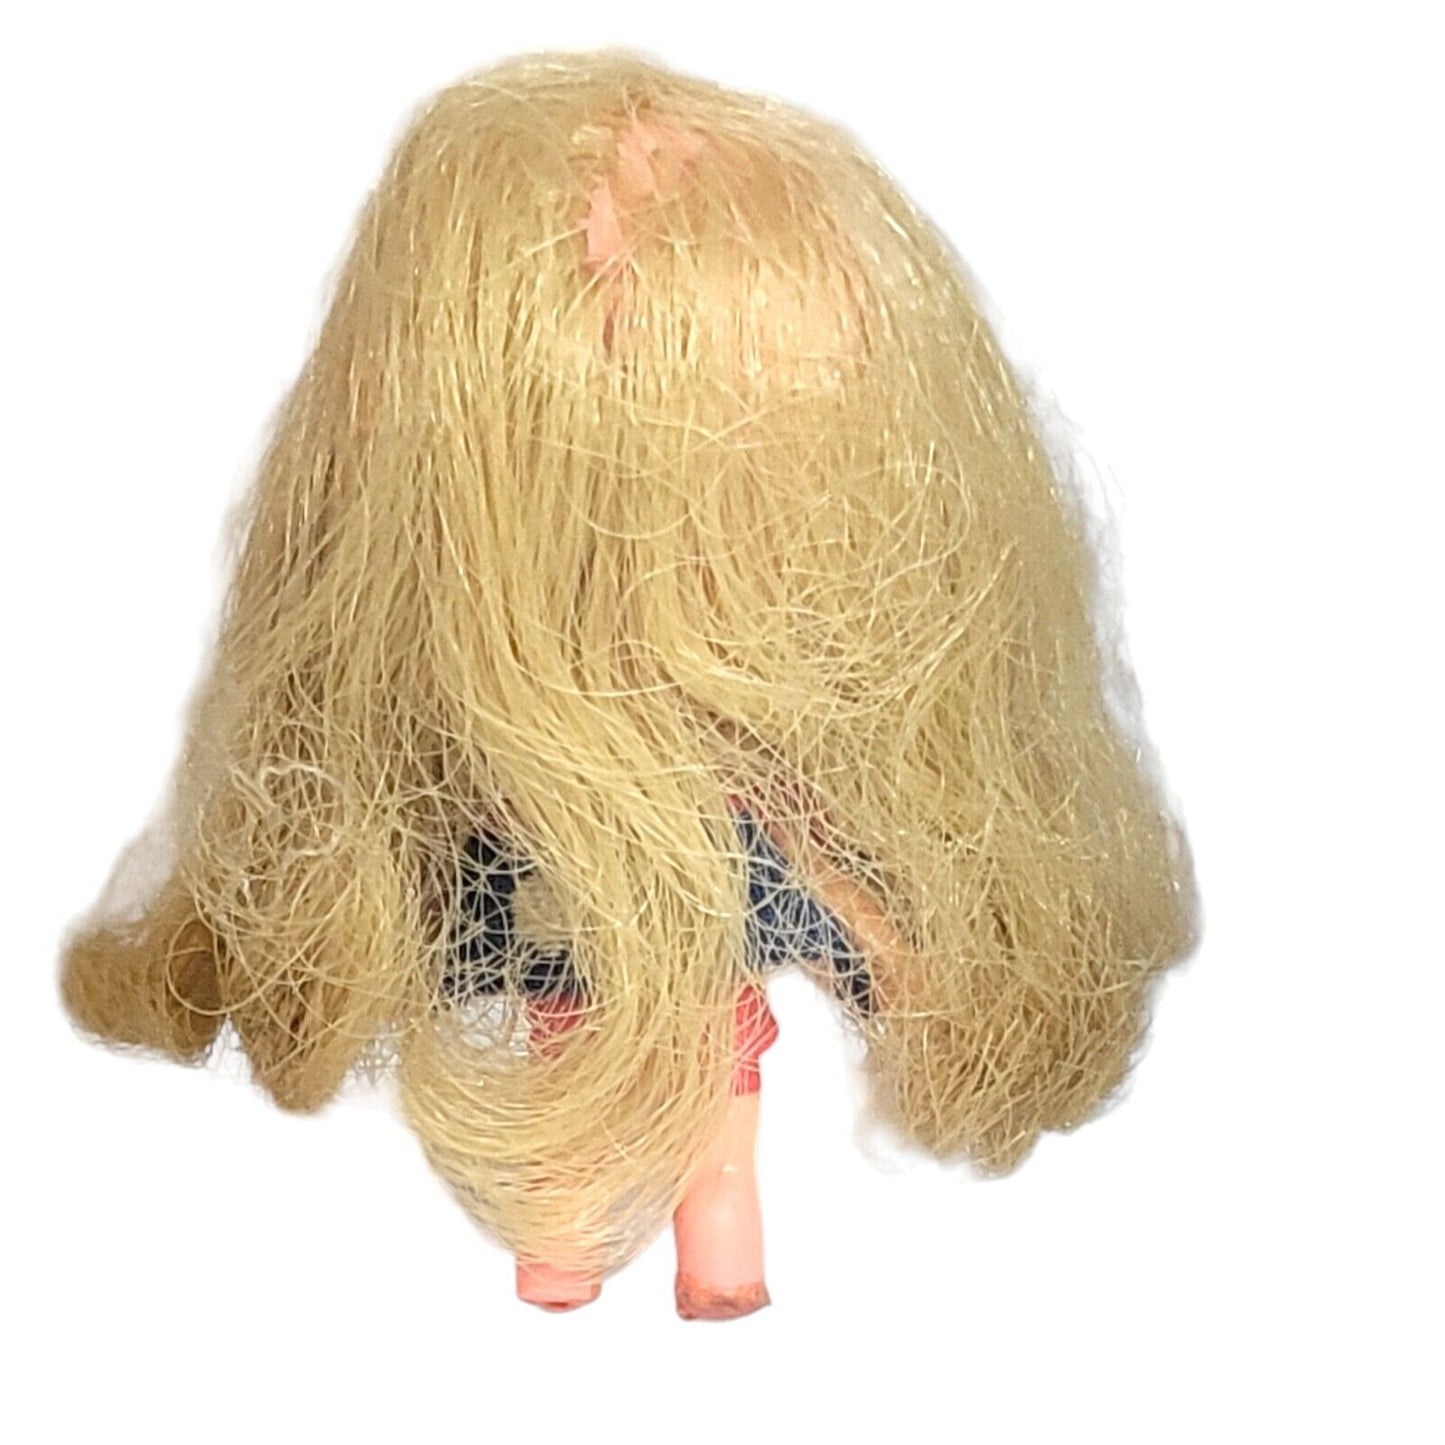 Vintage 1968 Mattel Liddle Kiddles Lorelei Doll